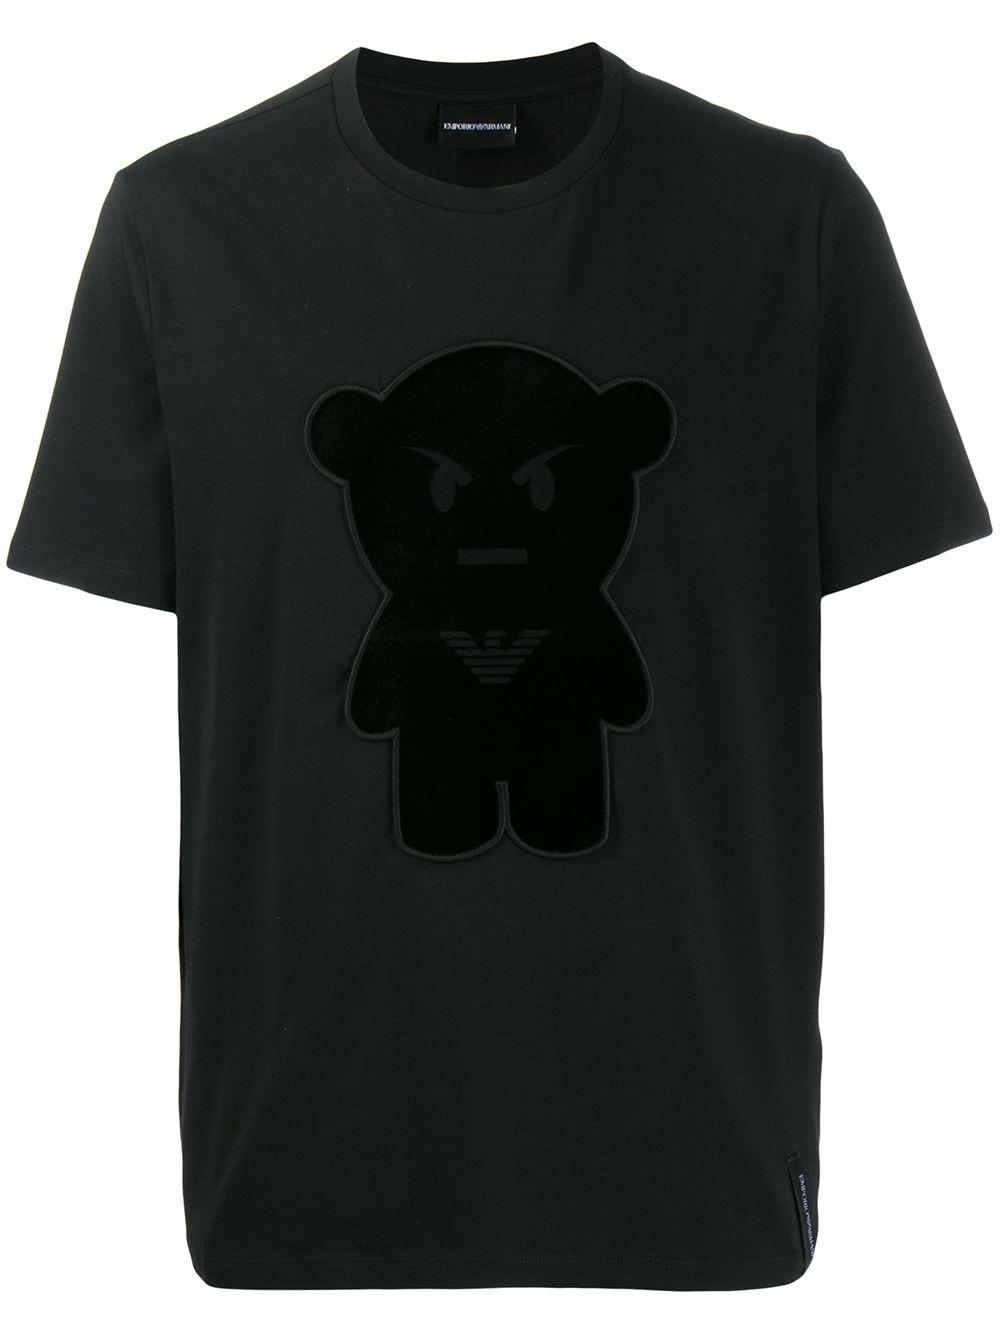 ARMANI Emporio Armani T-shirt MANGA BEAR Homme Noir 3H1T8A 1J91Z 999 TL XL FAIRE OFFRE 